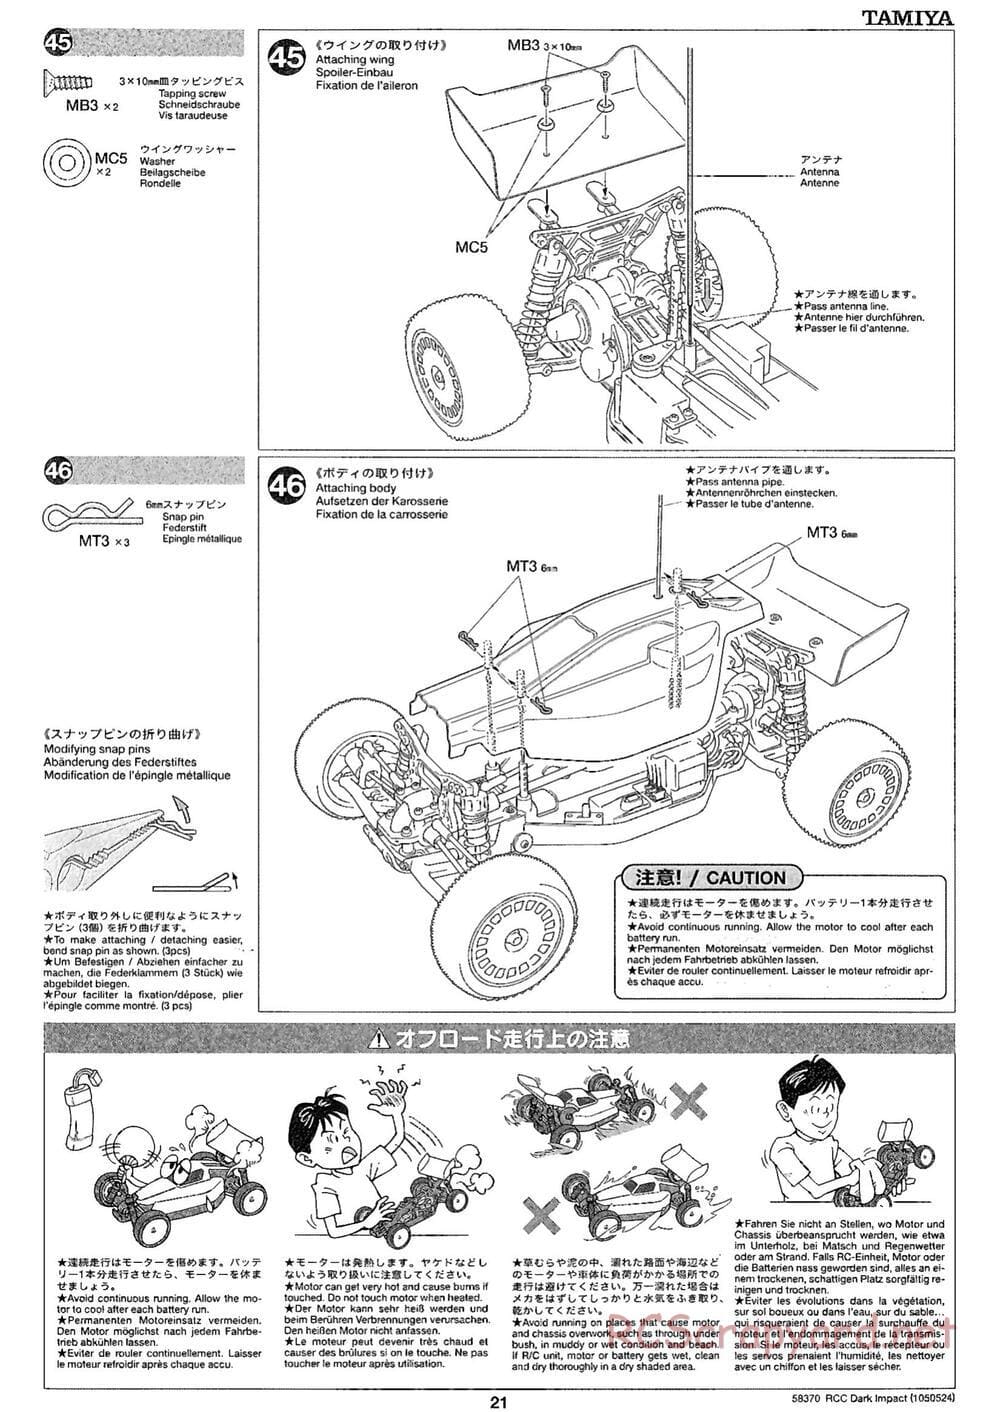 Tamiya - Dark Impact Chassis - Manual - Page 21